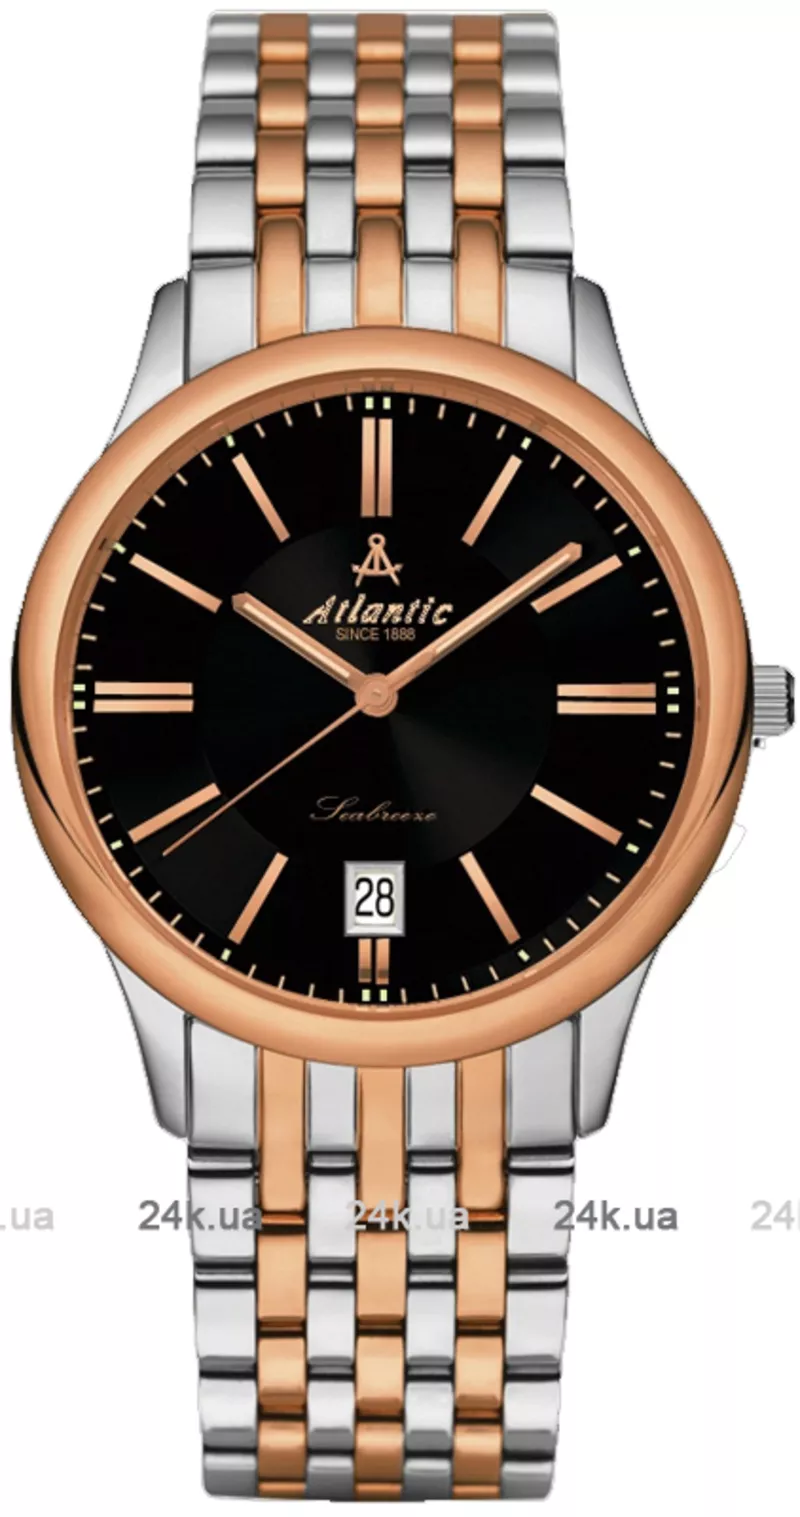 Часы Atlantic 61355.43.61R